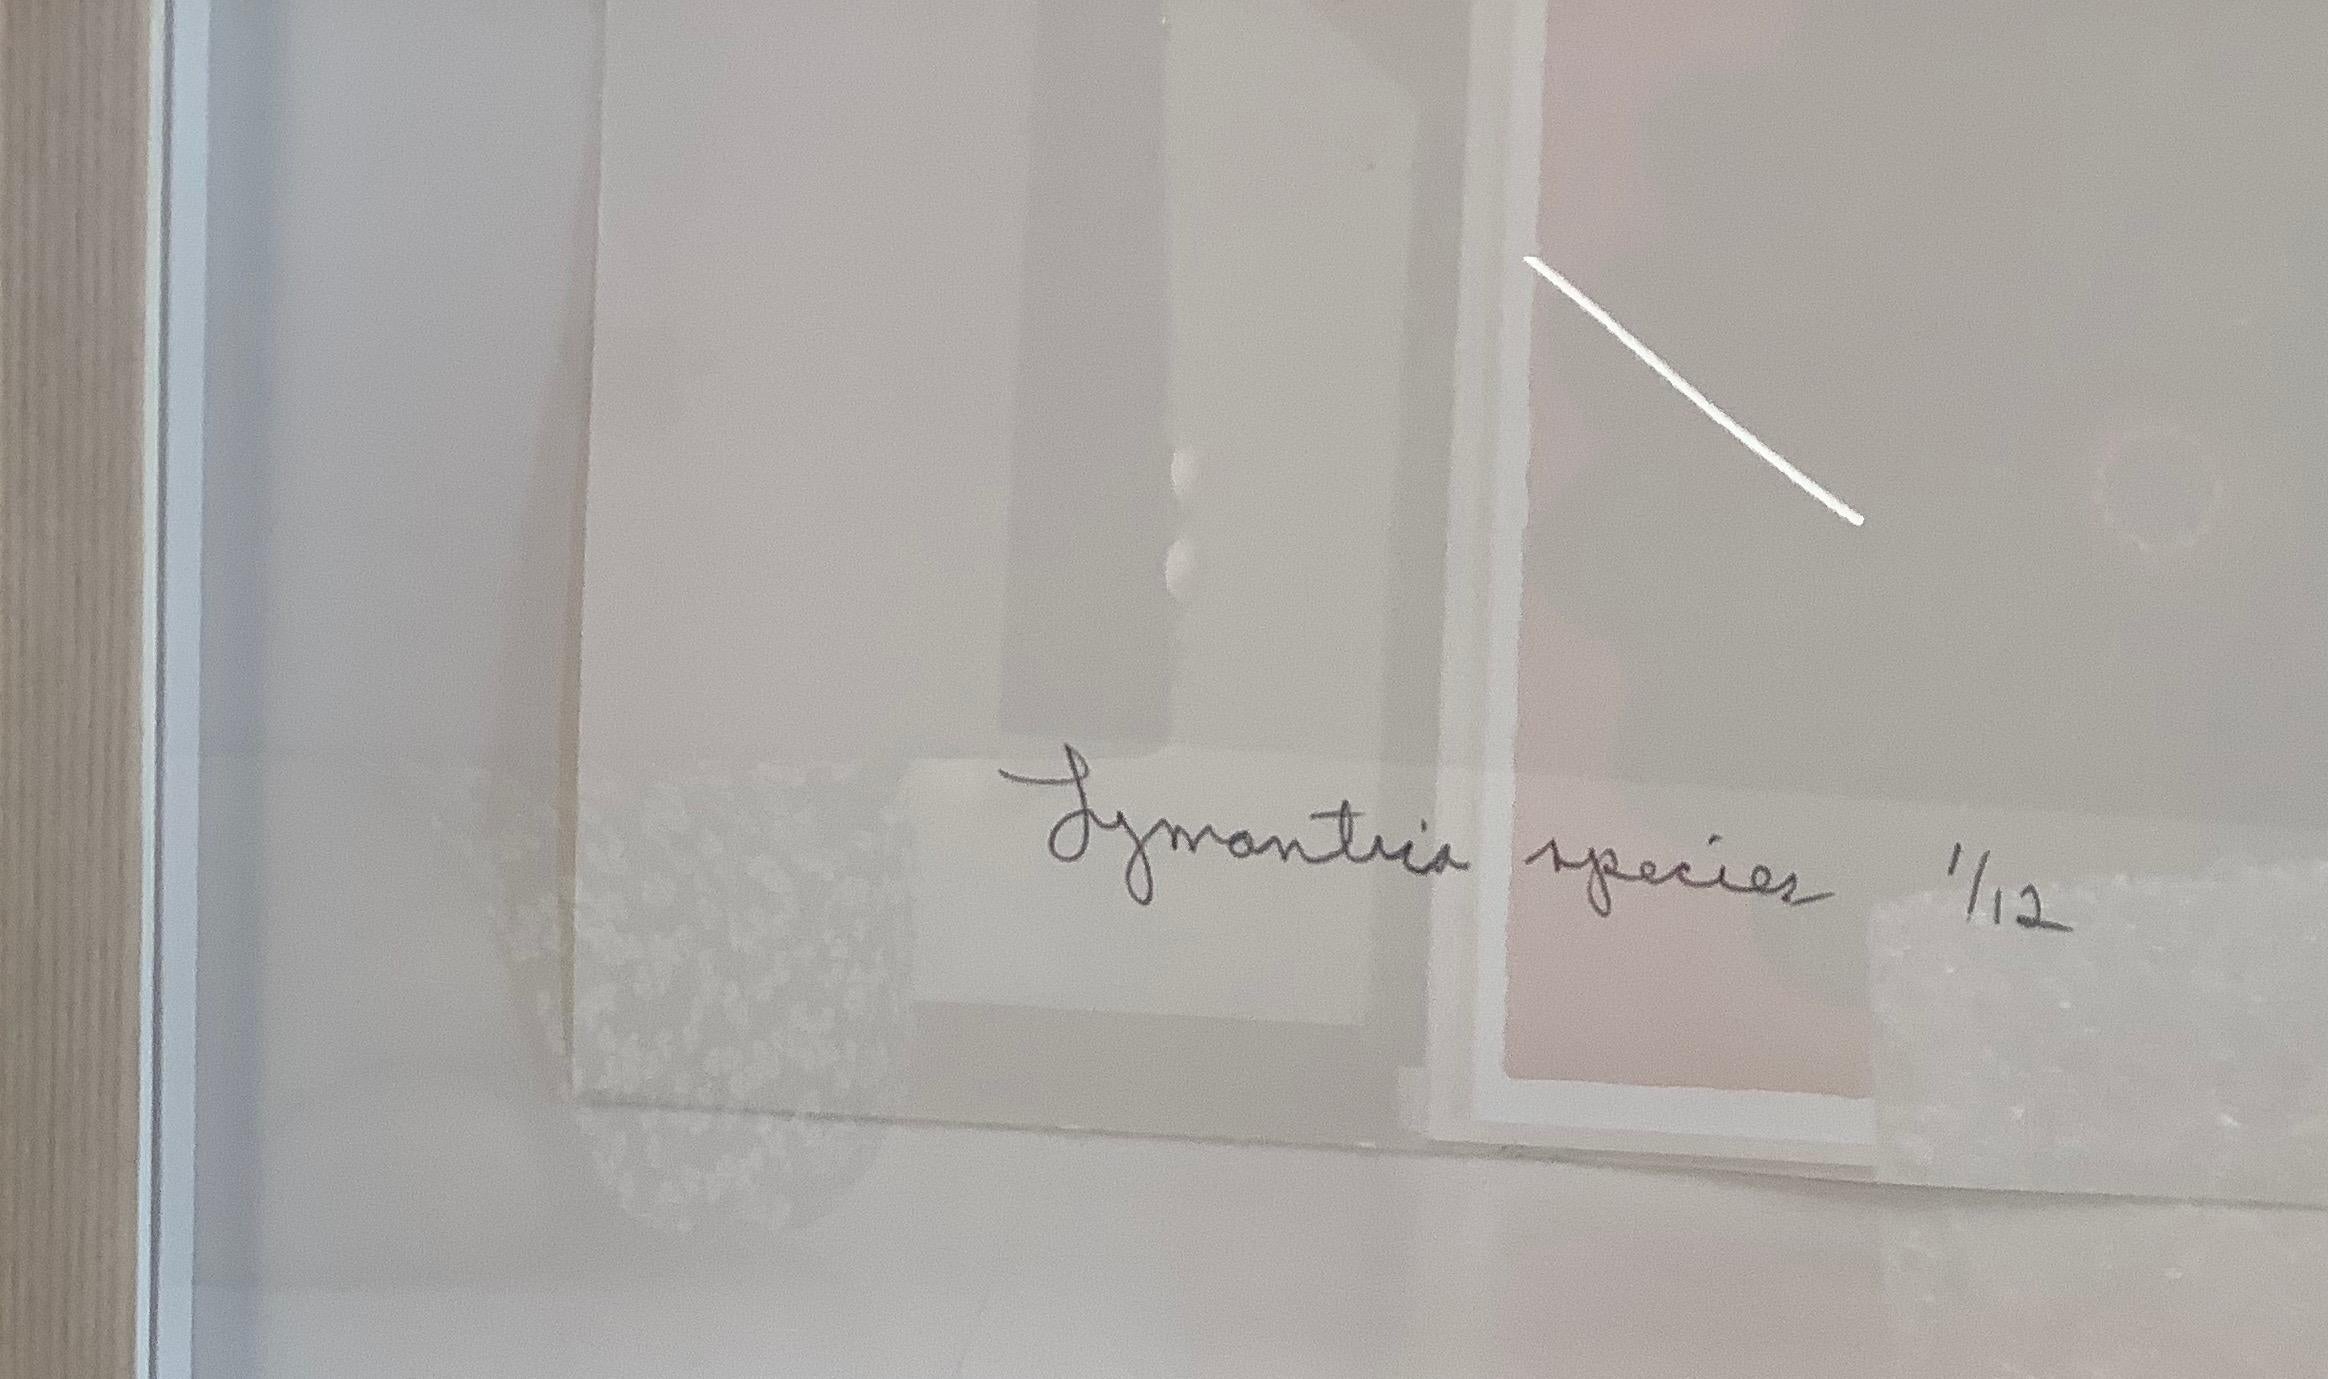 Dieser detailreiche Pigmentdruck auf Aquarellpapier zeigt eine braune Motte der Gattung Lymantria mit hellrosa Details auf dem Hinterleib, die sich dramatisch von einem soliden weißen Hintergrund abheben. 

Auflage von 12 Stück. Signiert, datiert